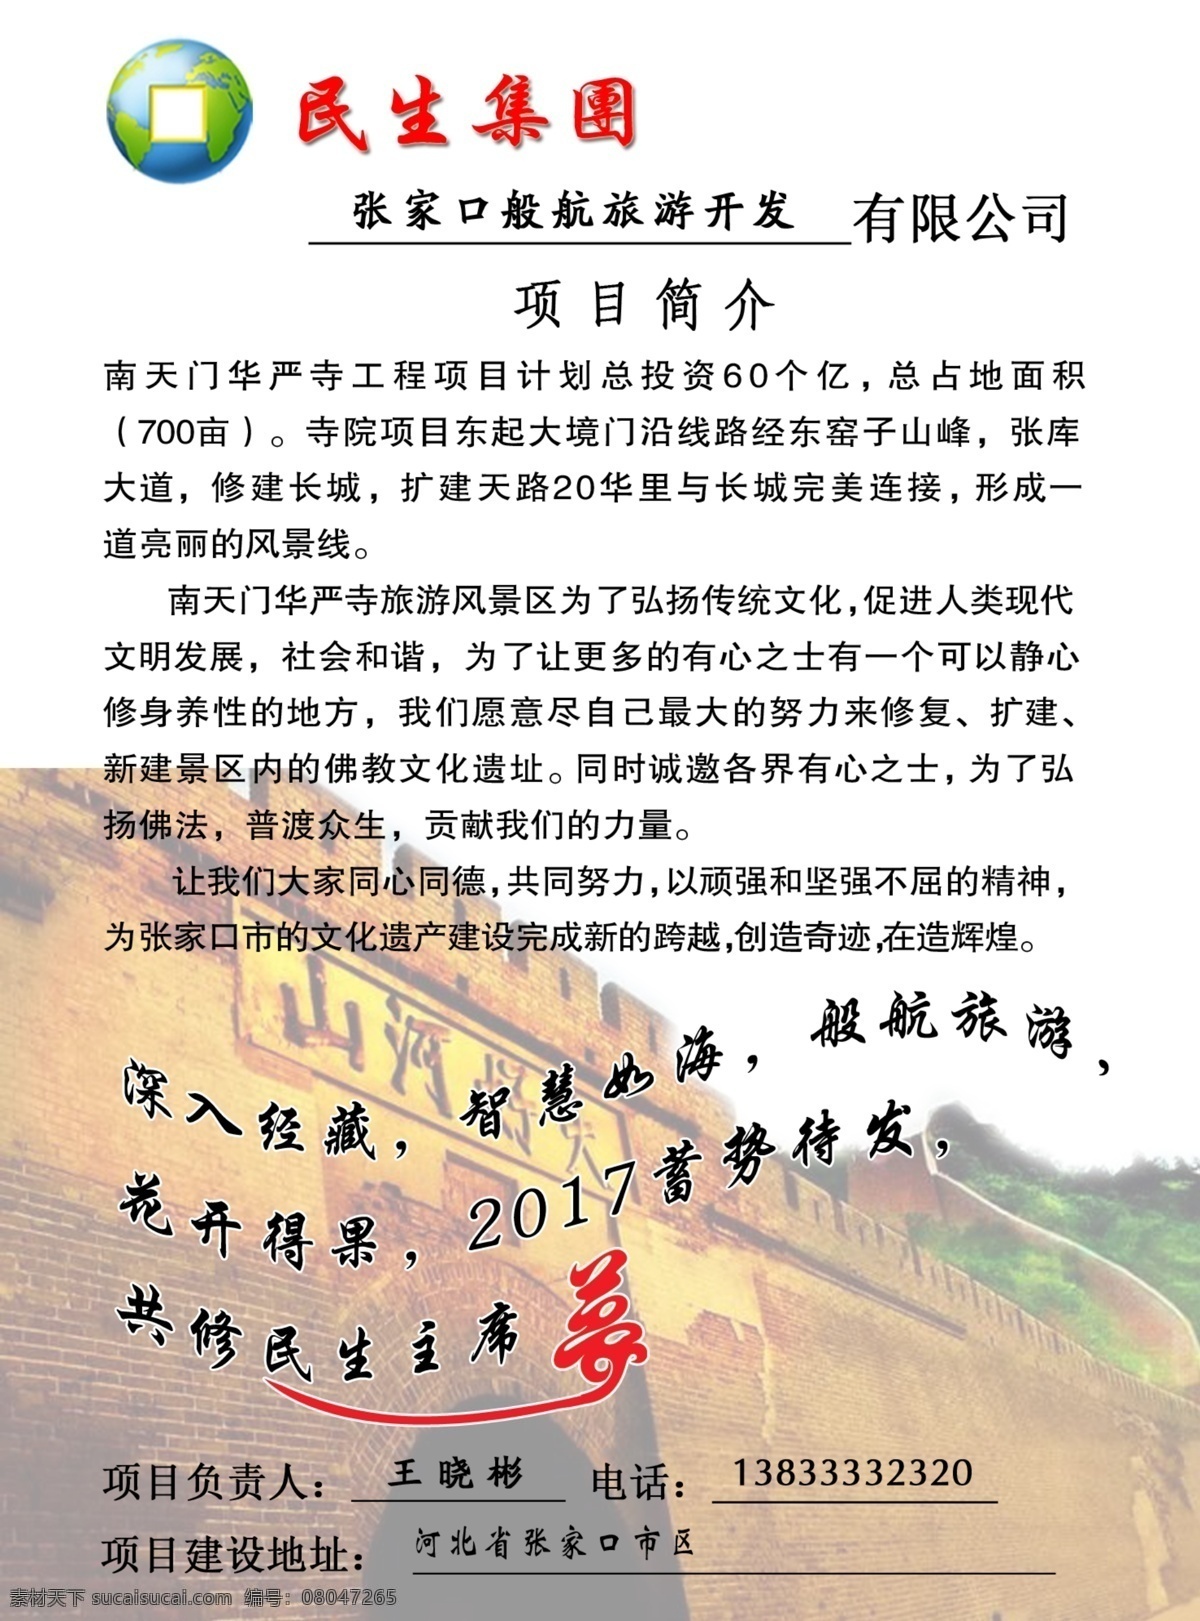 民生集团图片 民生项目简介 大境门 logo 旅游 南天门